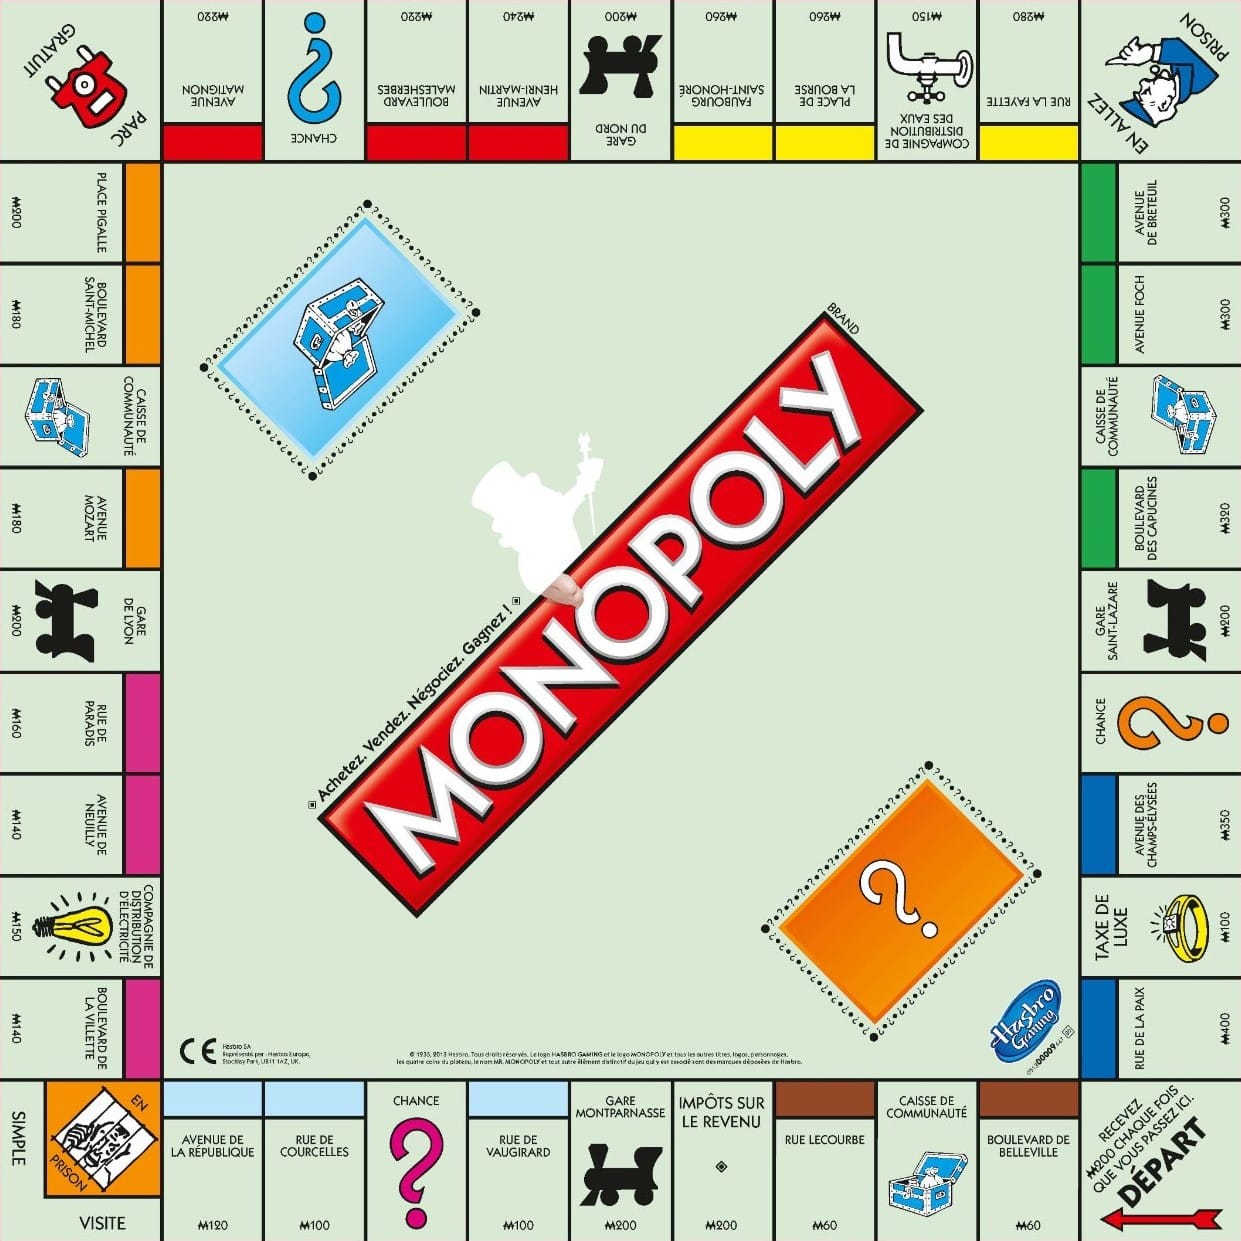 Le plateau du monopoly.